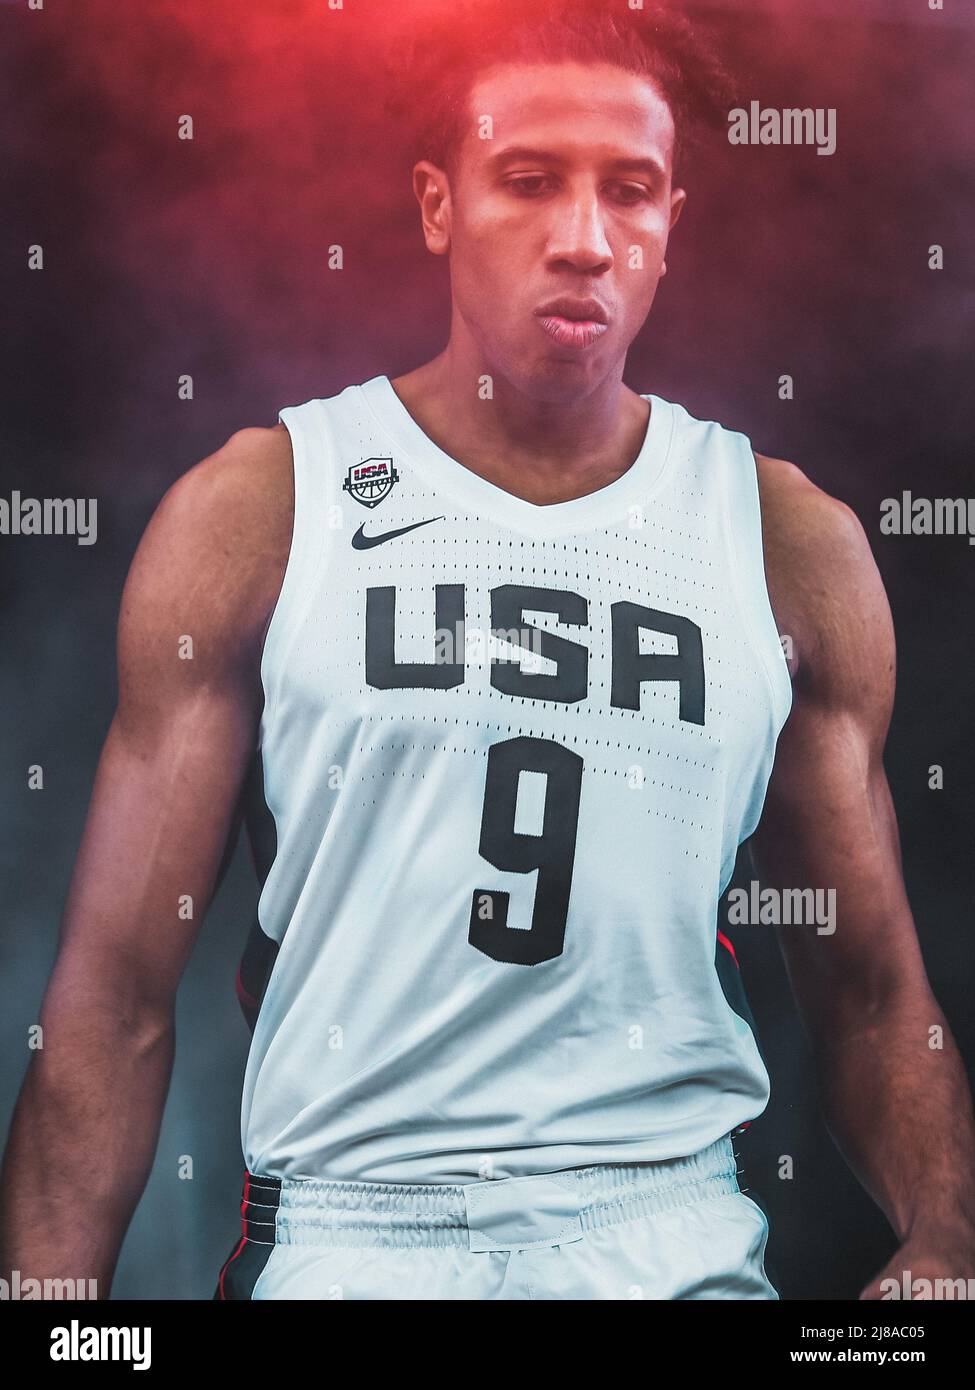 Amsterdam, pays-Bas, 19 juin 2019 : Portrait du joueur de basket-ball américain Kareem Maddox lors de la coupe du monde de basket-ball FIBA 3x3 Banque D'Images